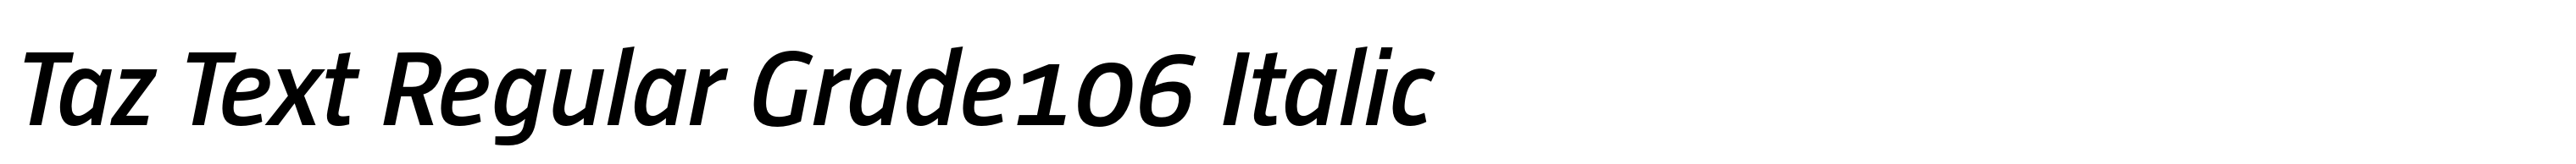 Taz Text Regular Grade106 Italic